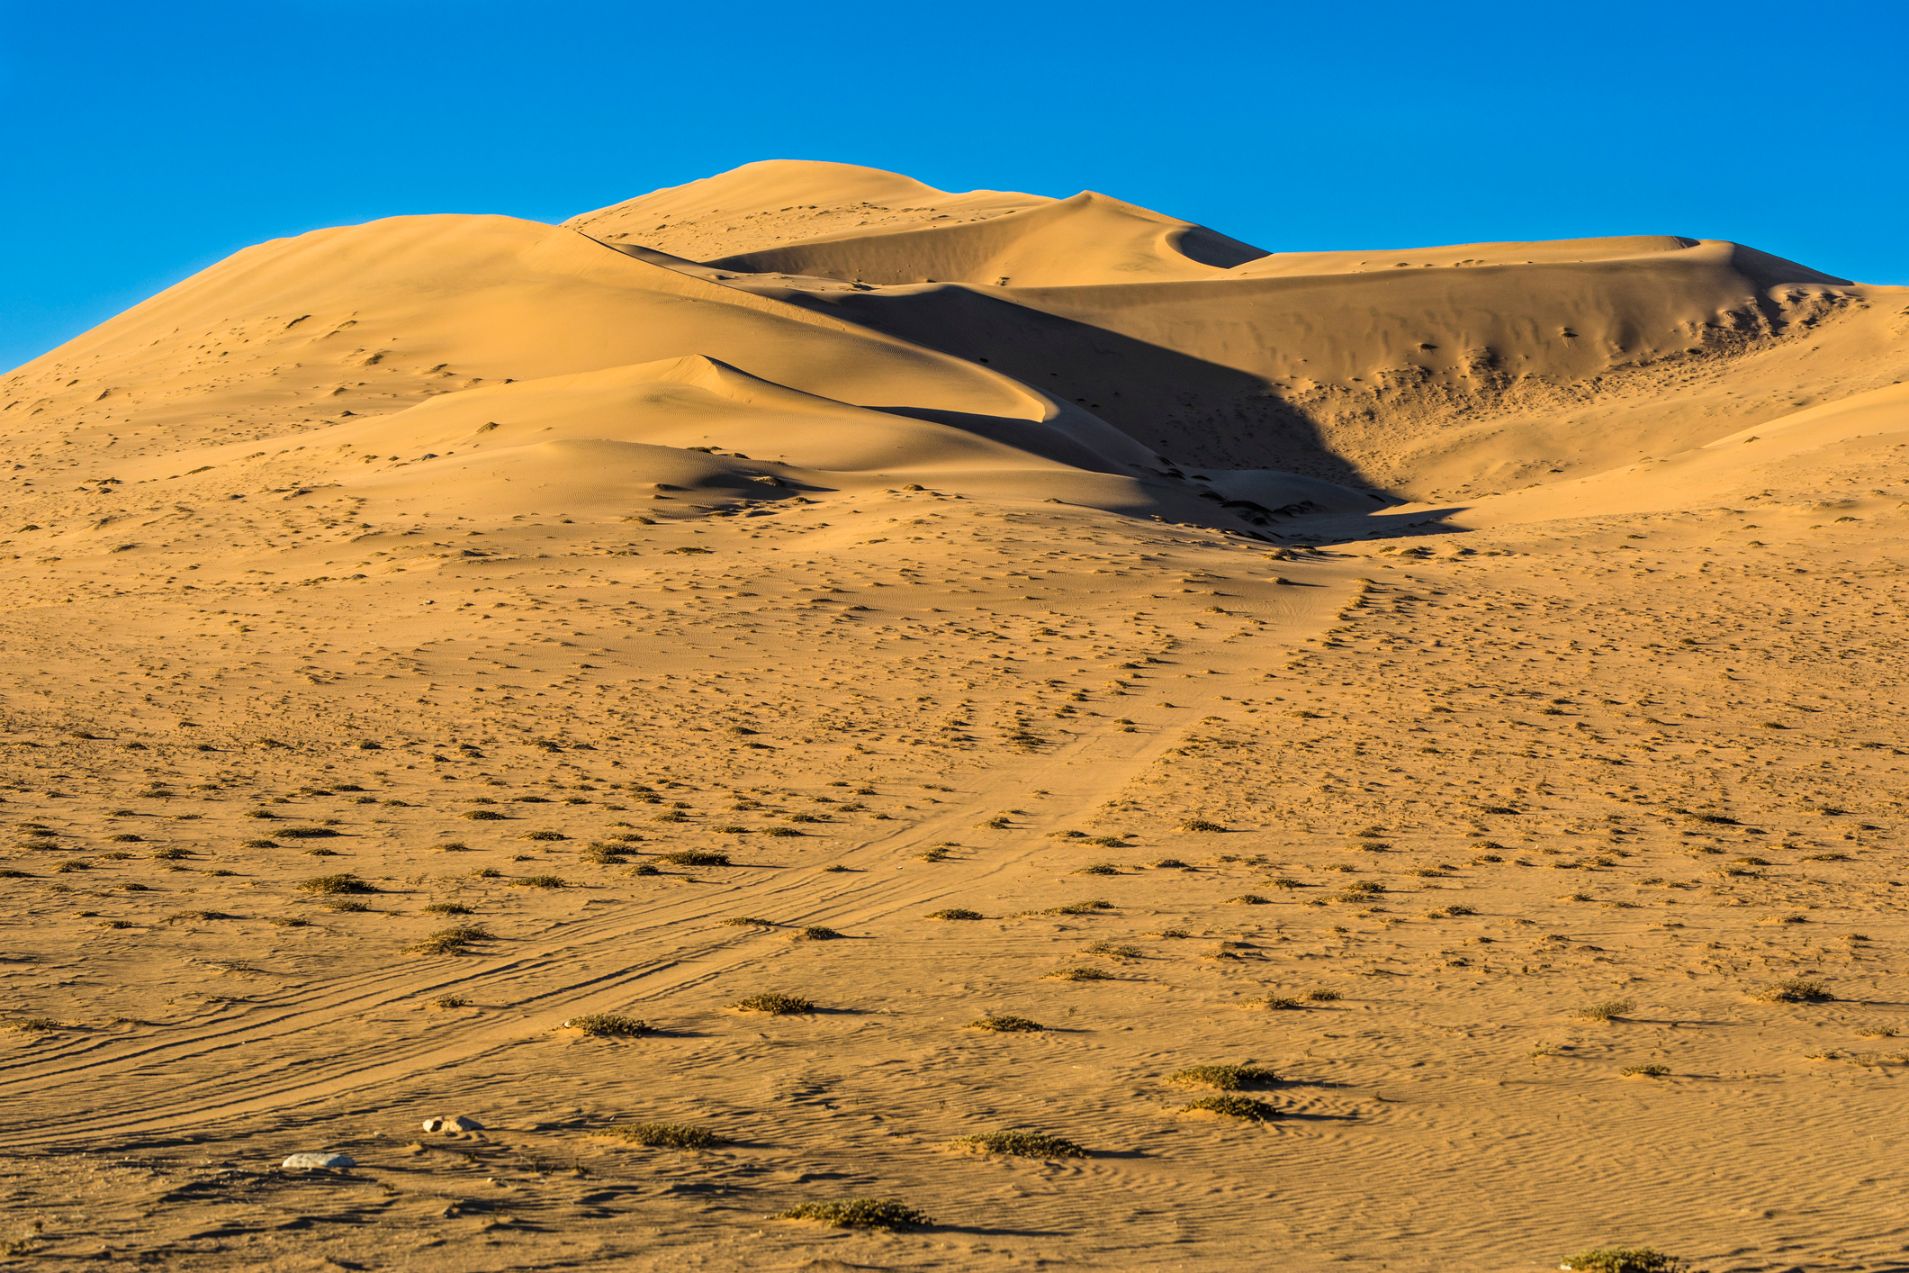 The Medanoso dune in Copiapo, in the Atacama Desert